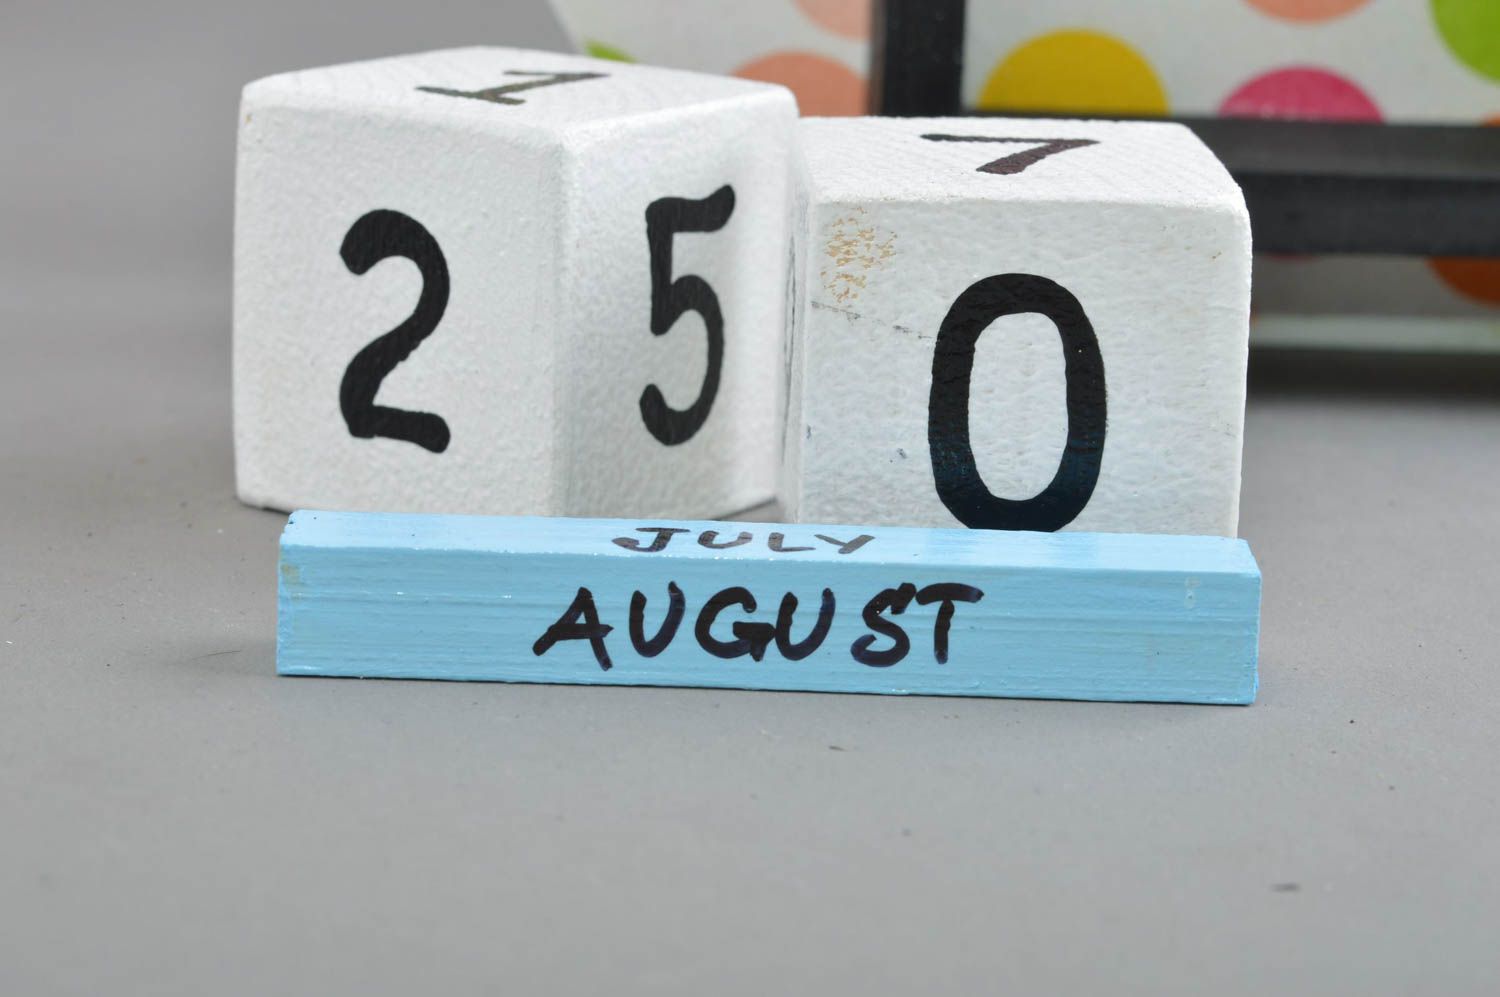 Детский календарь в виде барашка из фанеры декупаж в крупный горох ручной работы фото 4